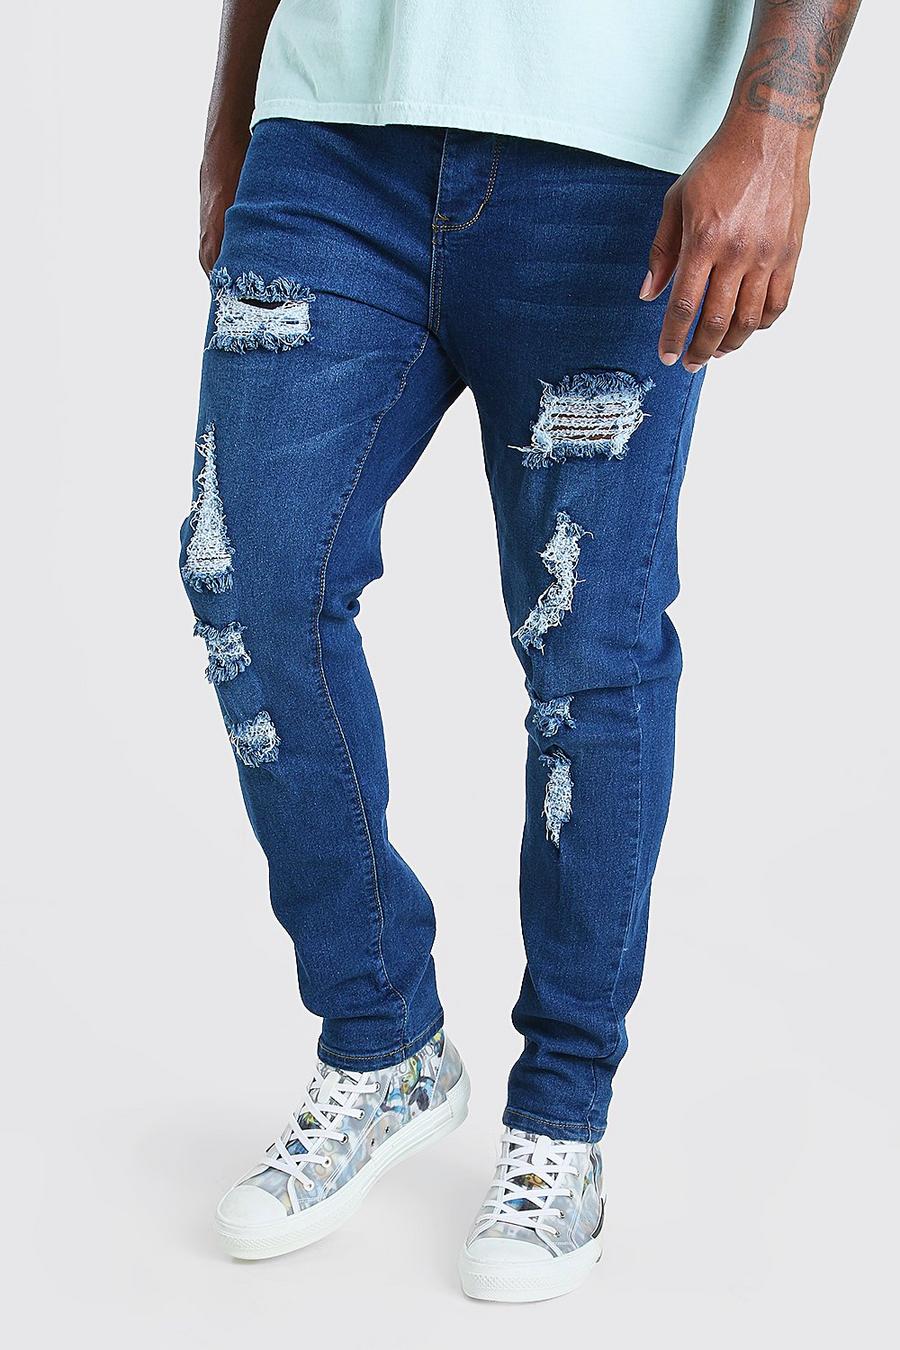 כחול ביניים סקיני ג'ינס עם קרעים מרובים לגברים גדולים וגבוהים image number 1